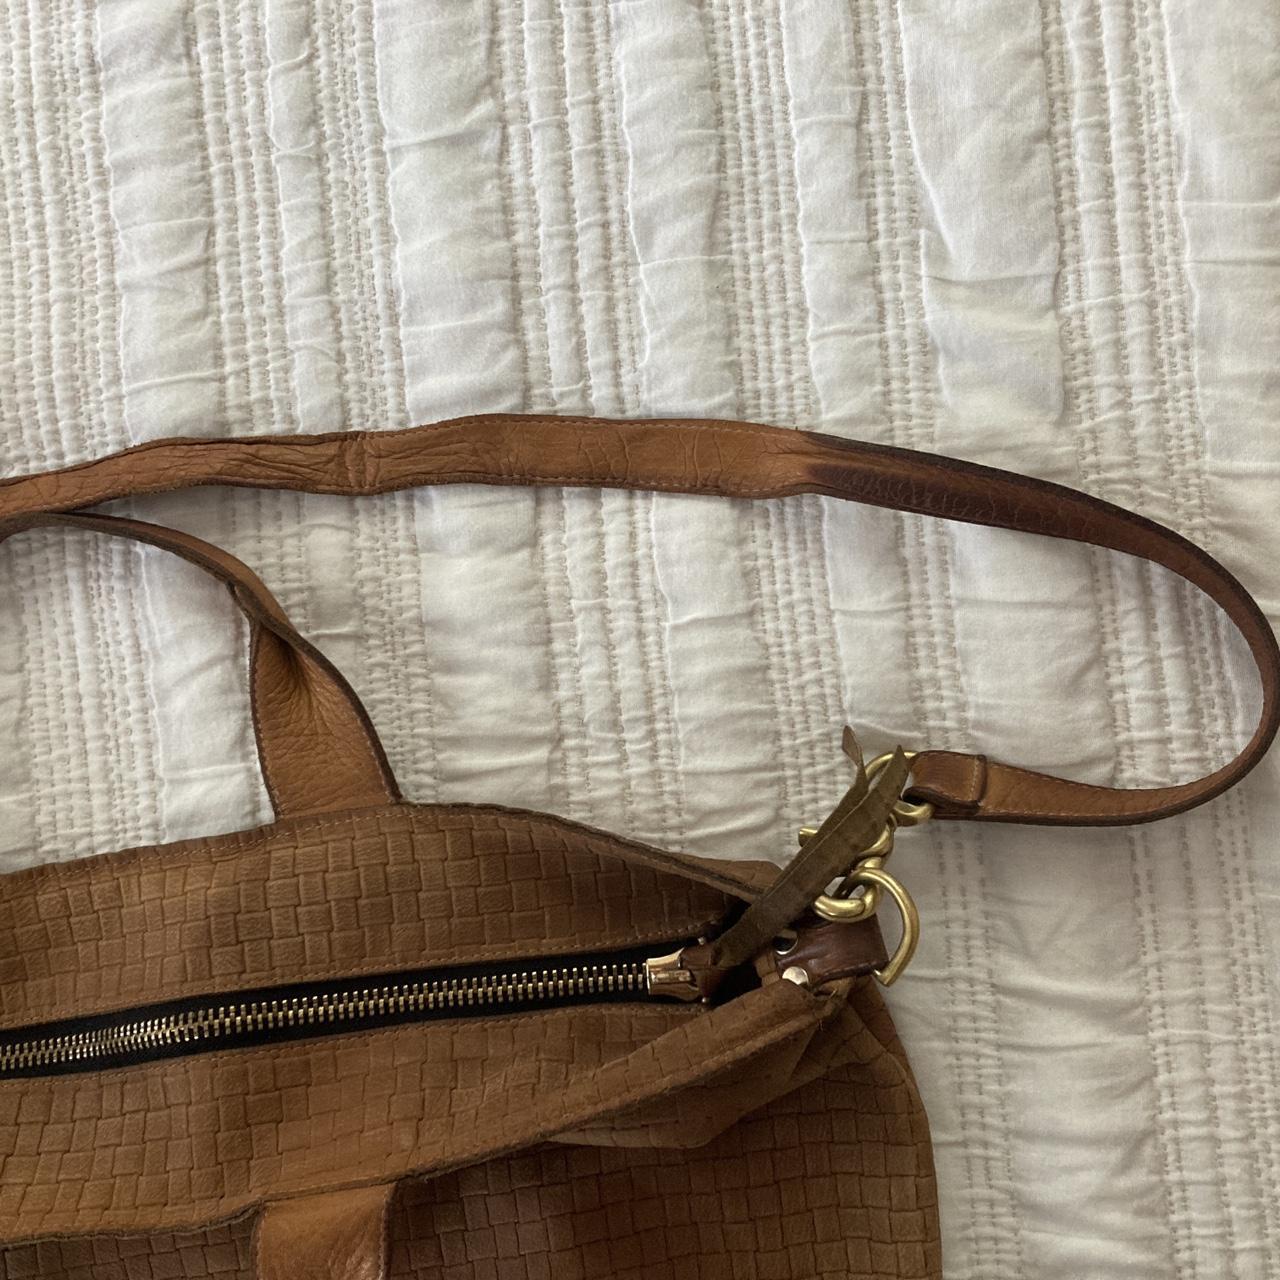 Clare V Sac Bretelle bag. Brown leather. A CV - Depop